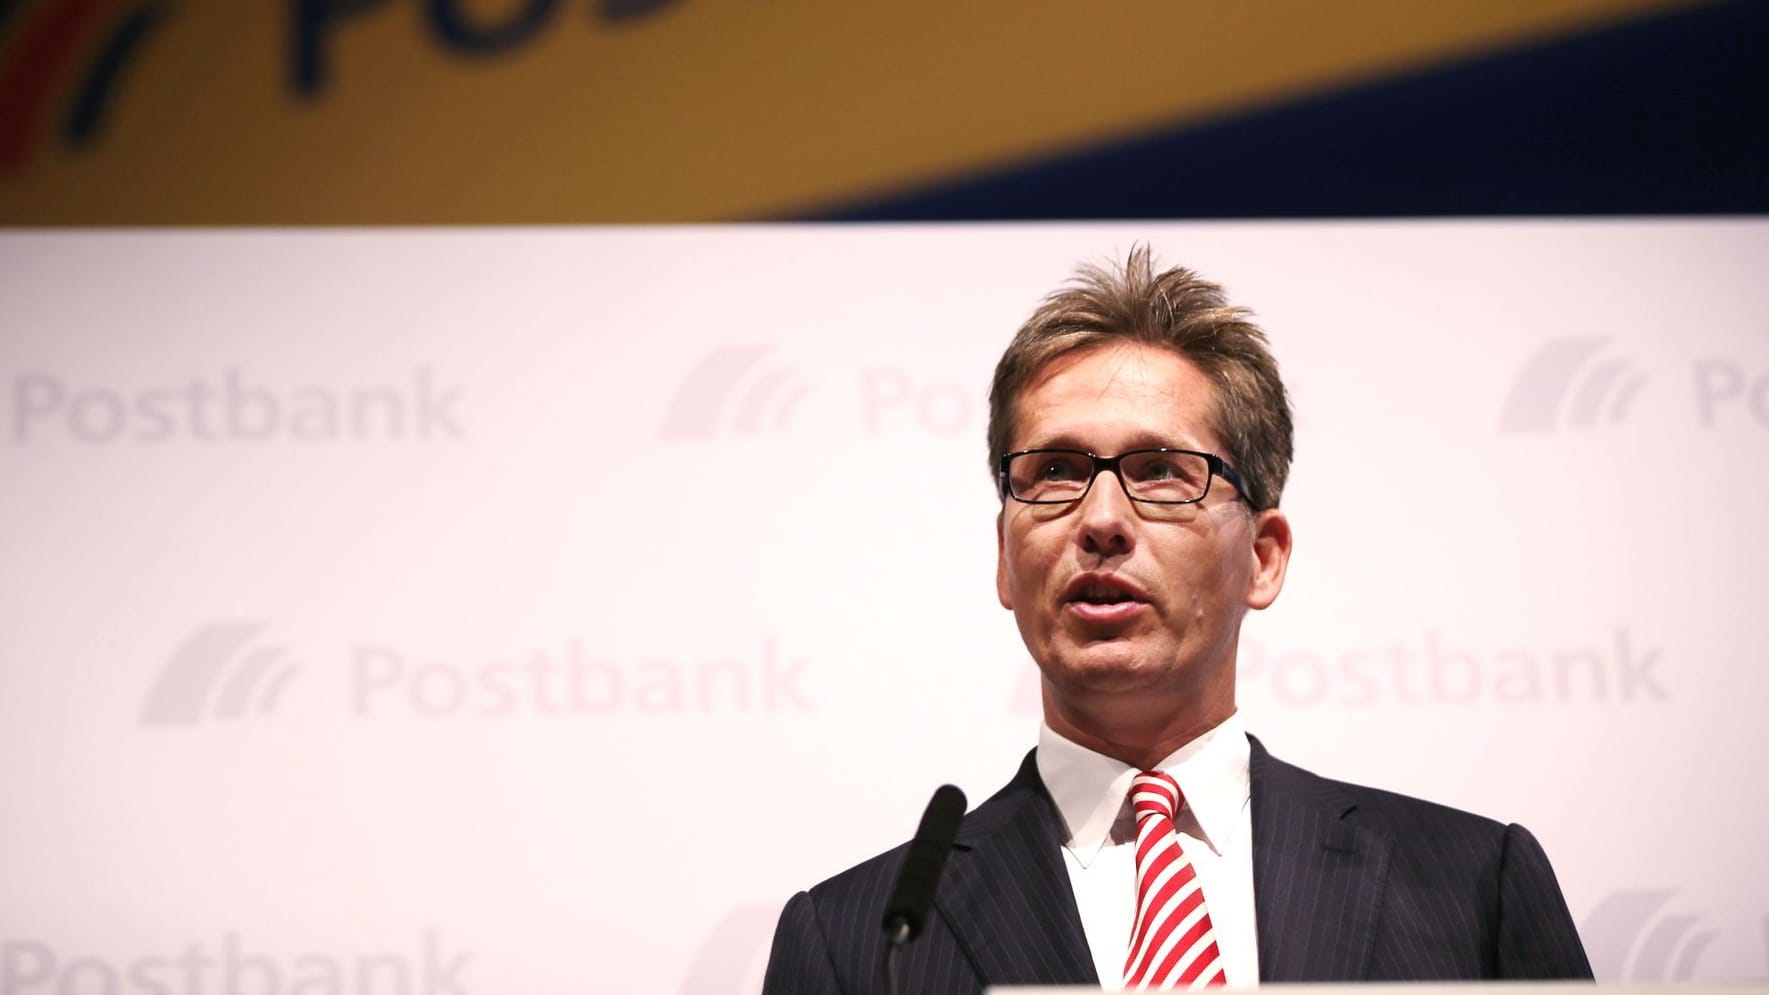 Ex-Postbankchef Frank Strauß ist tot